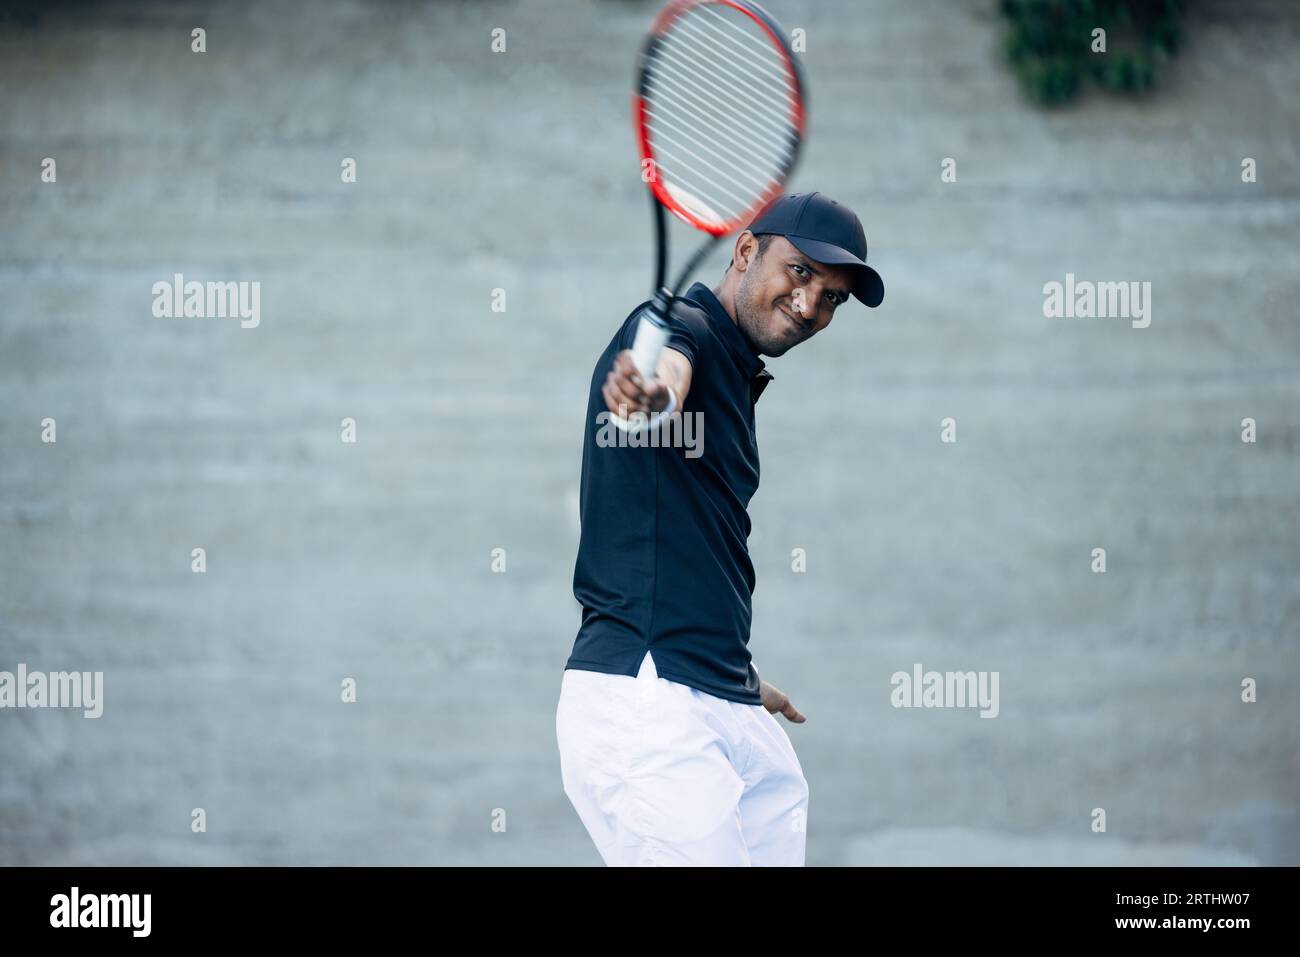 Giovane tennista che gioca su un campo duro e colpisce una palla durante una partita Foto Stock